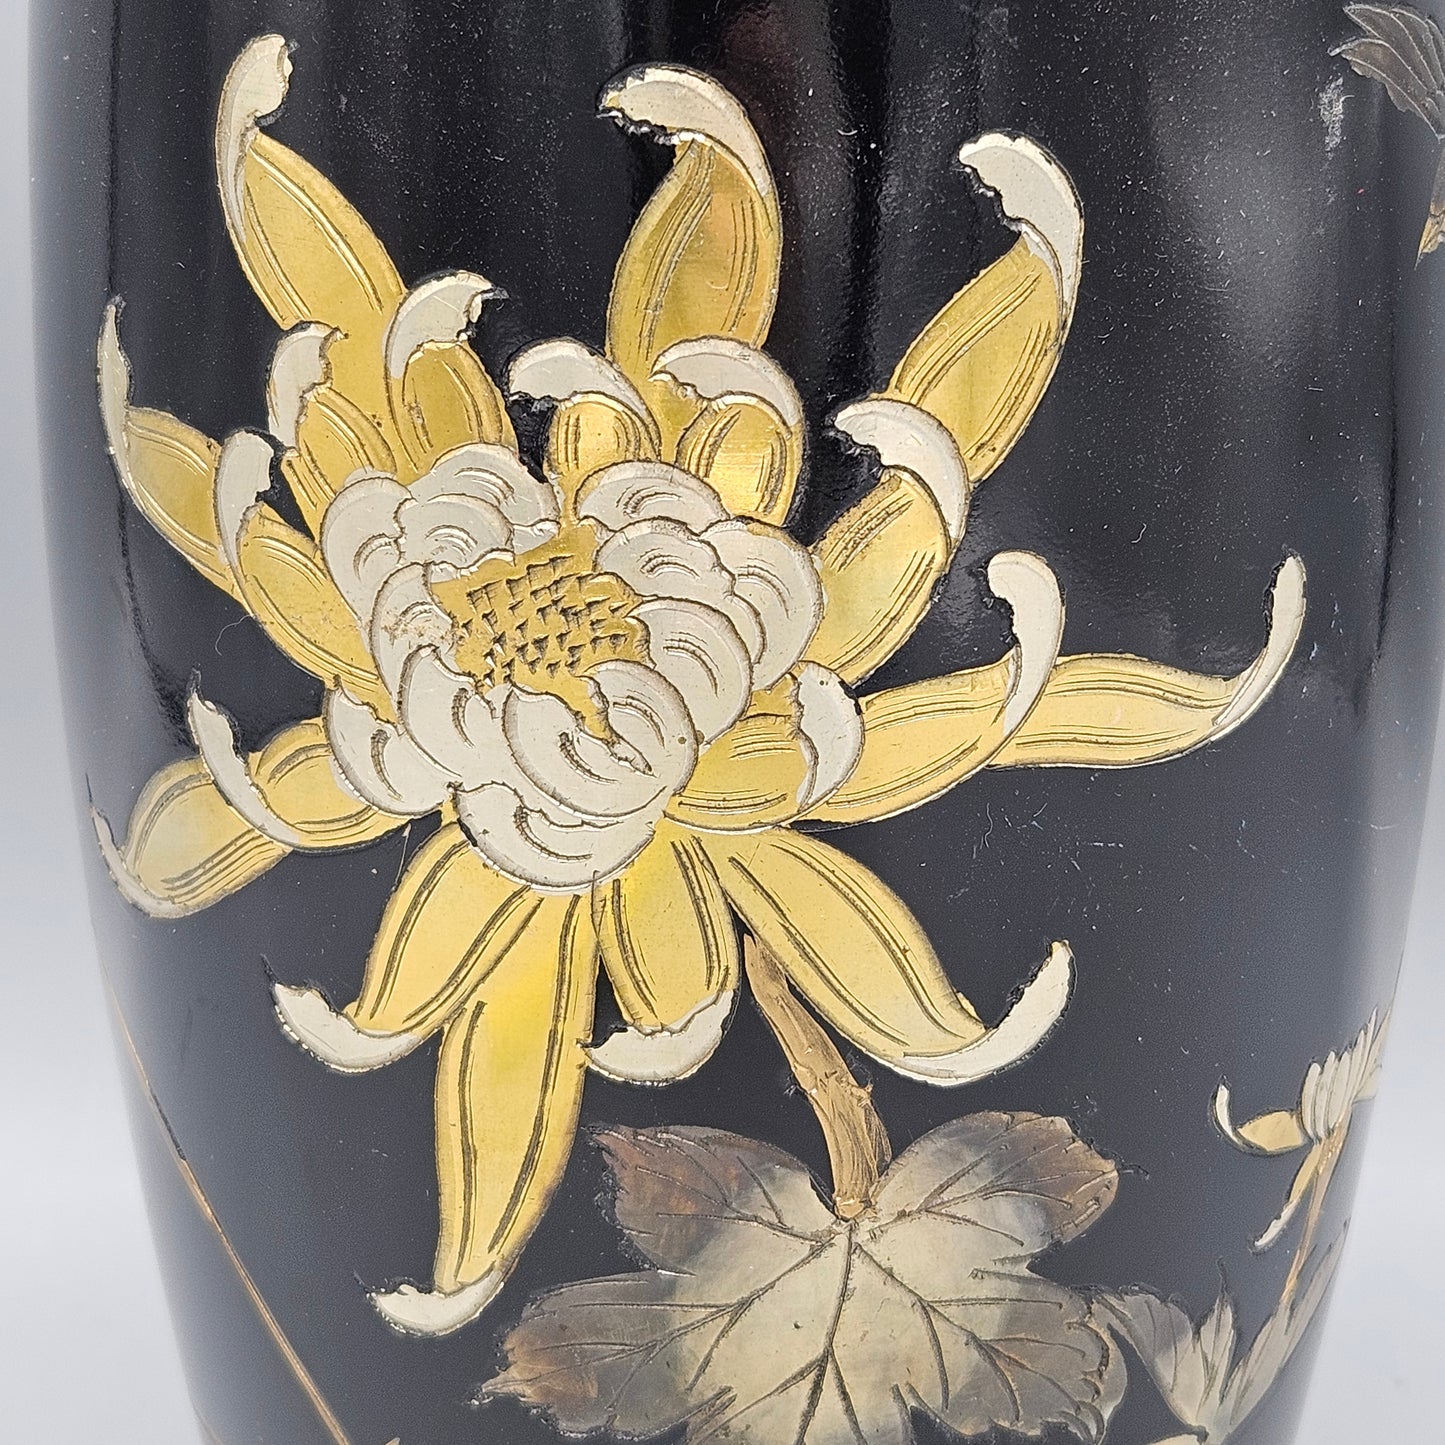 Vintage Japanese Mixed Metal Chrysanthemum Vase